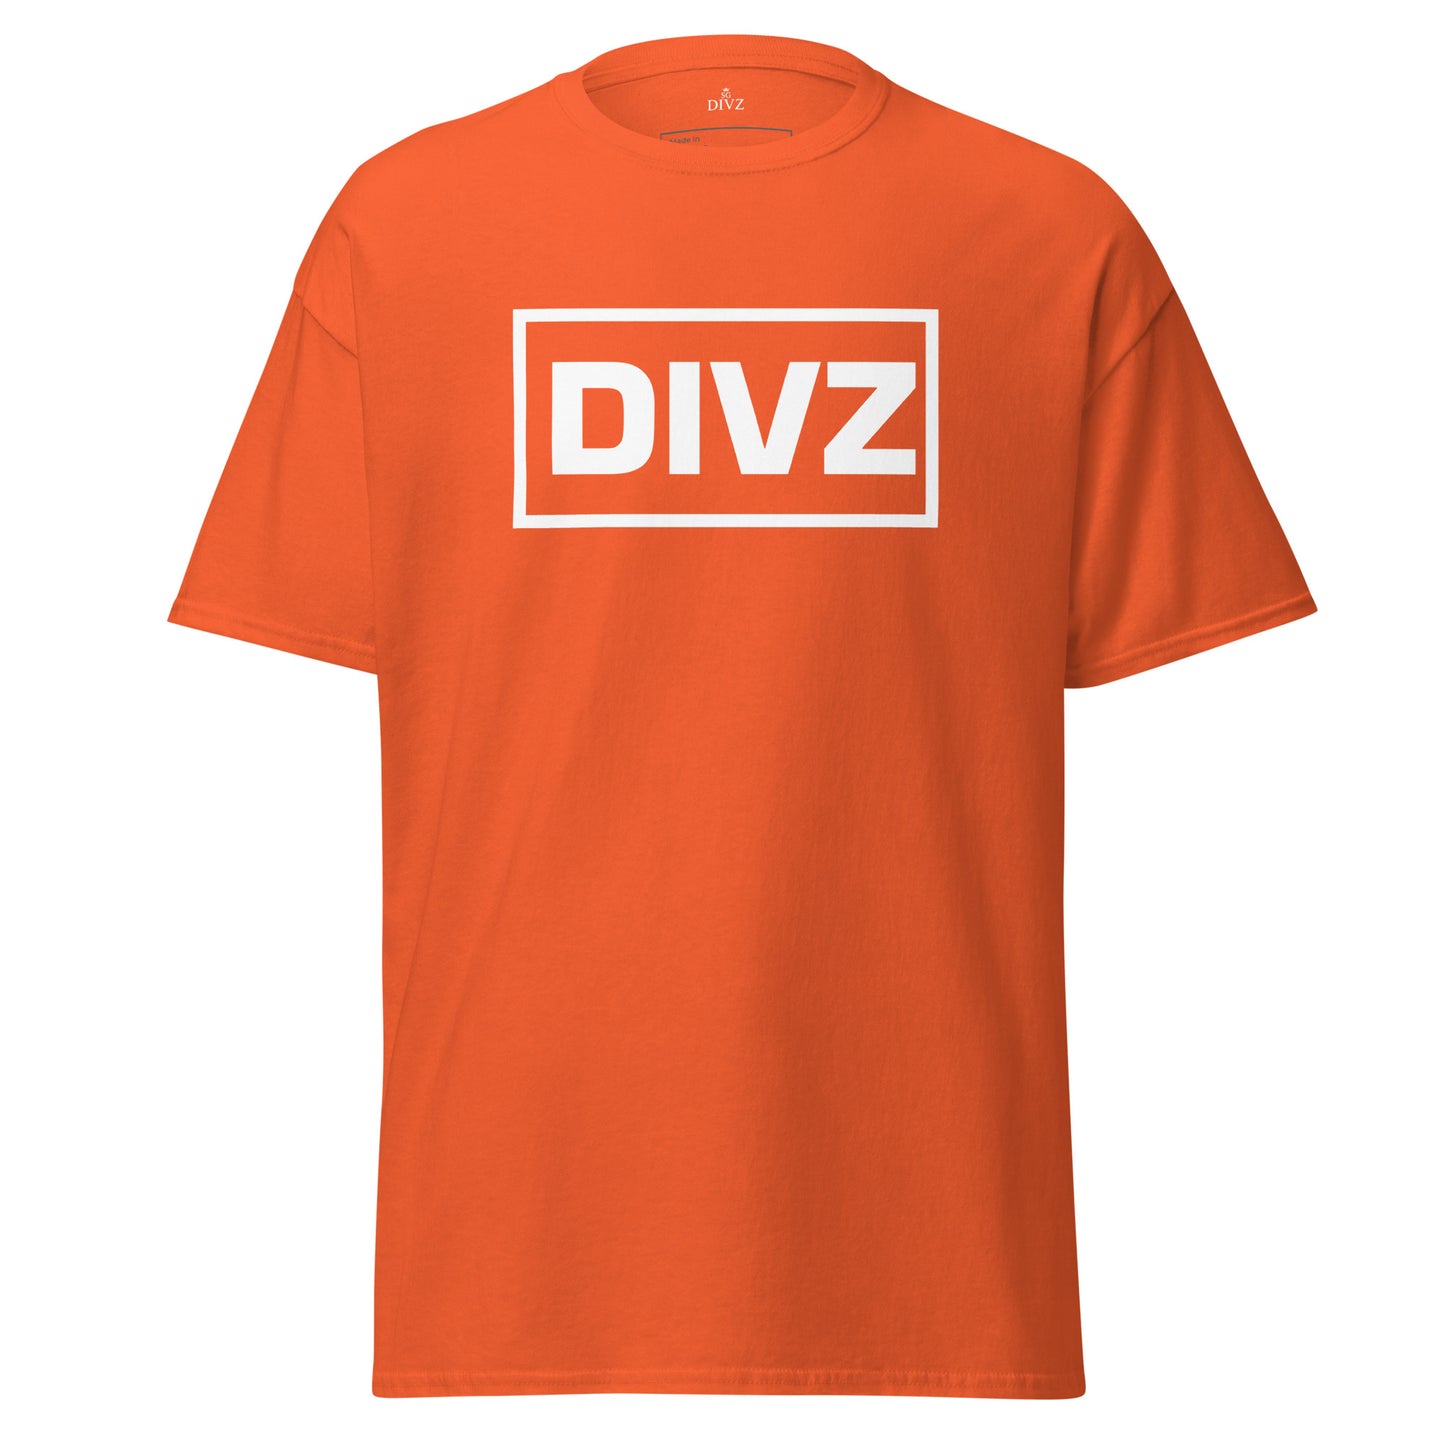 Classic Divz T-shirt